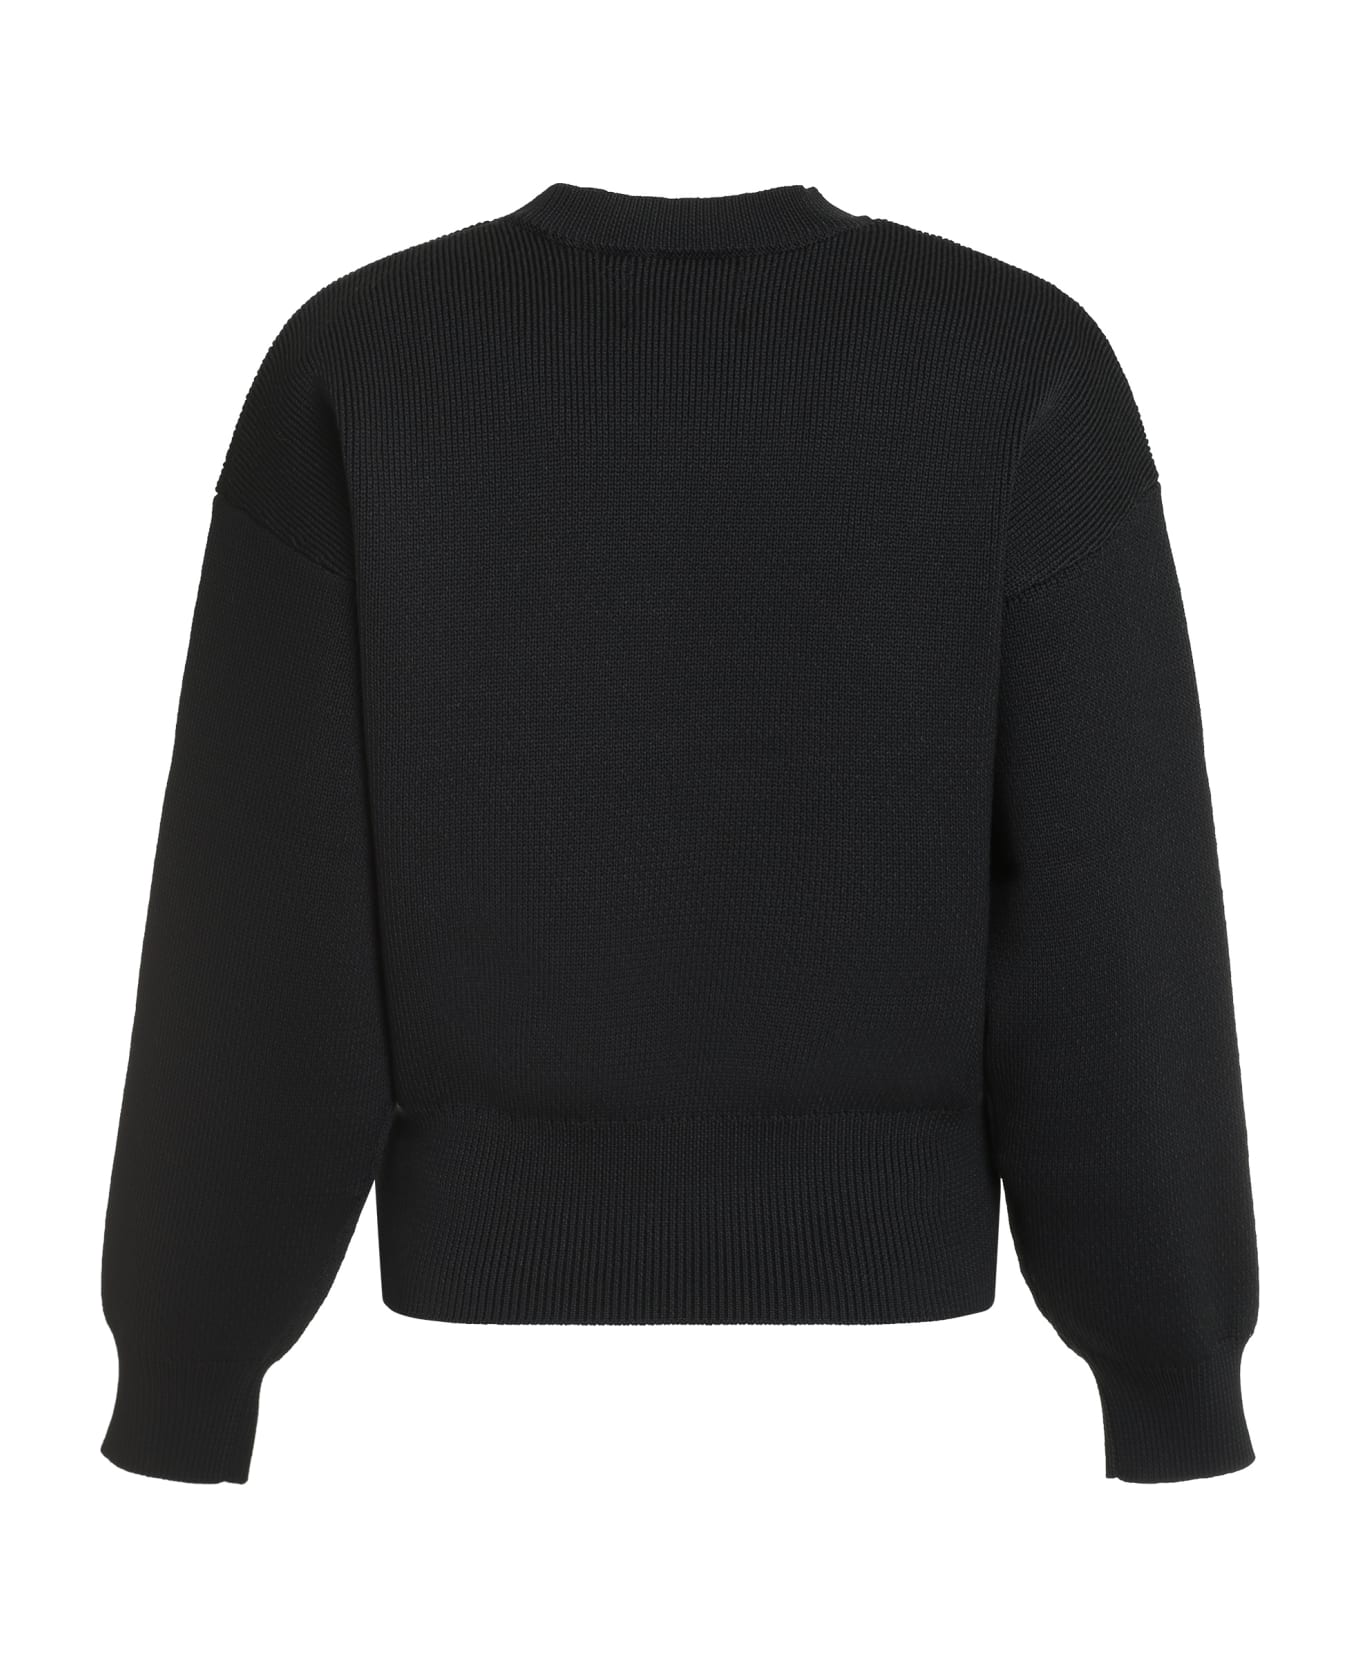 Marant Étoile Ailys Cotton Blend Crew-neck Sweater - black